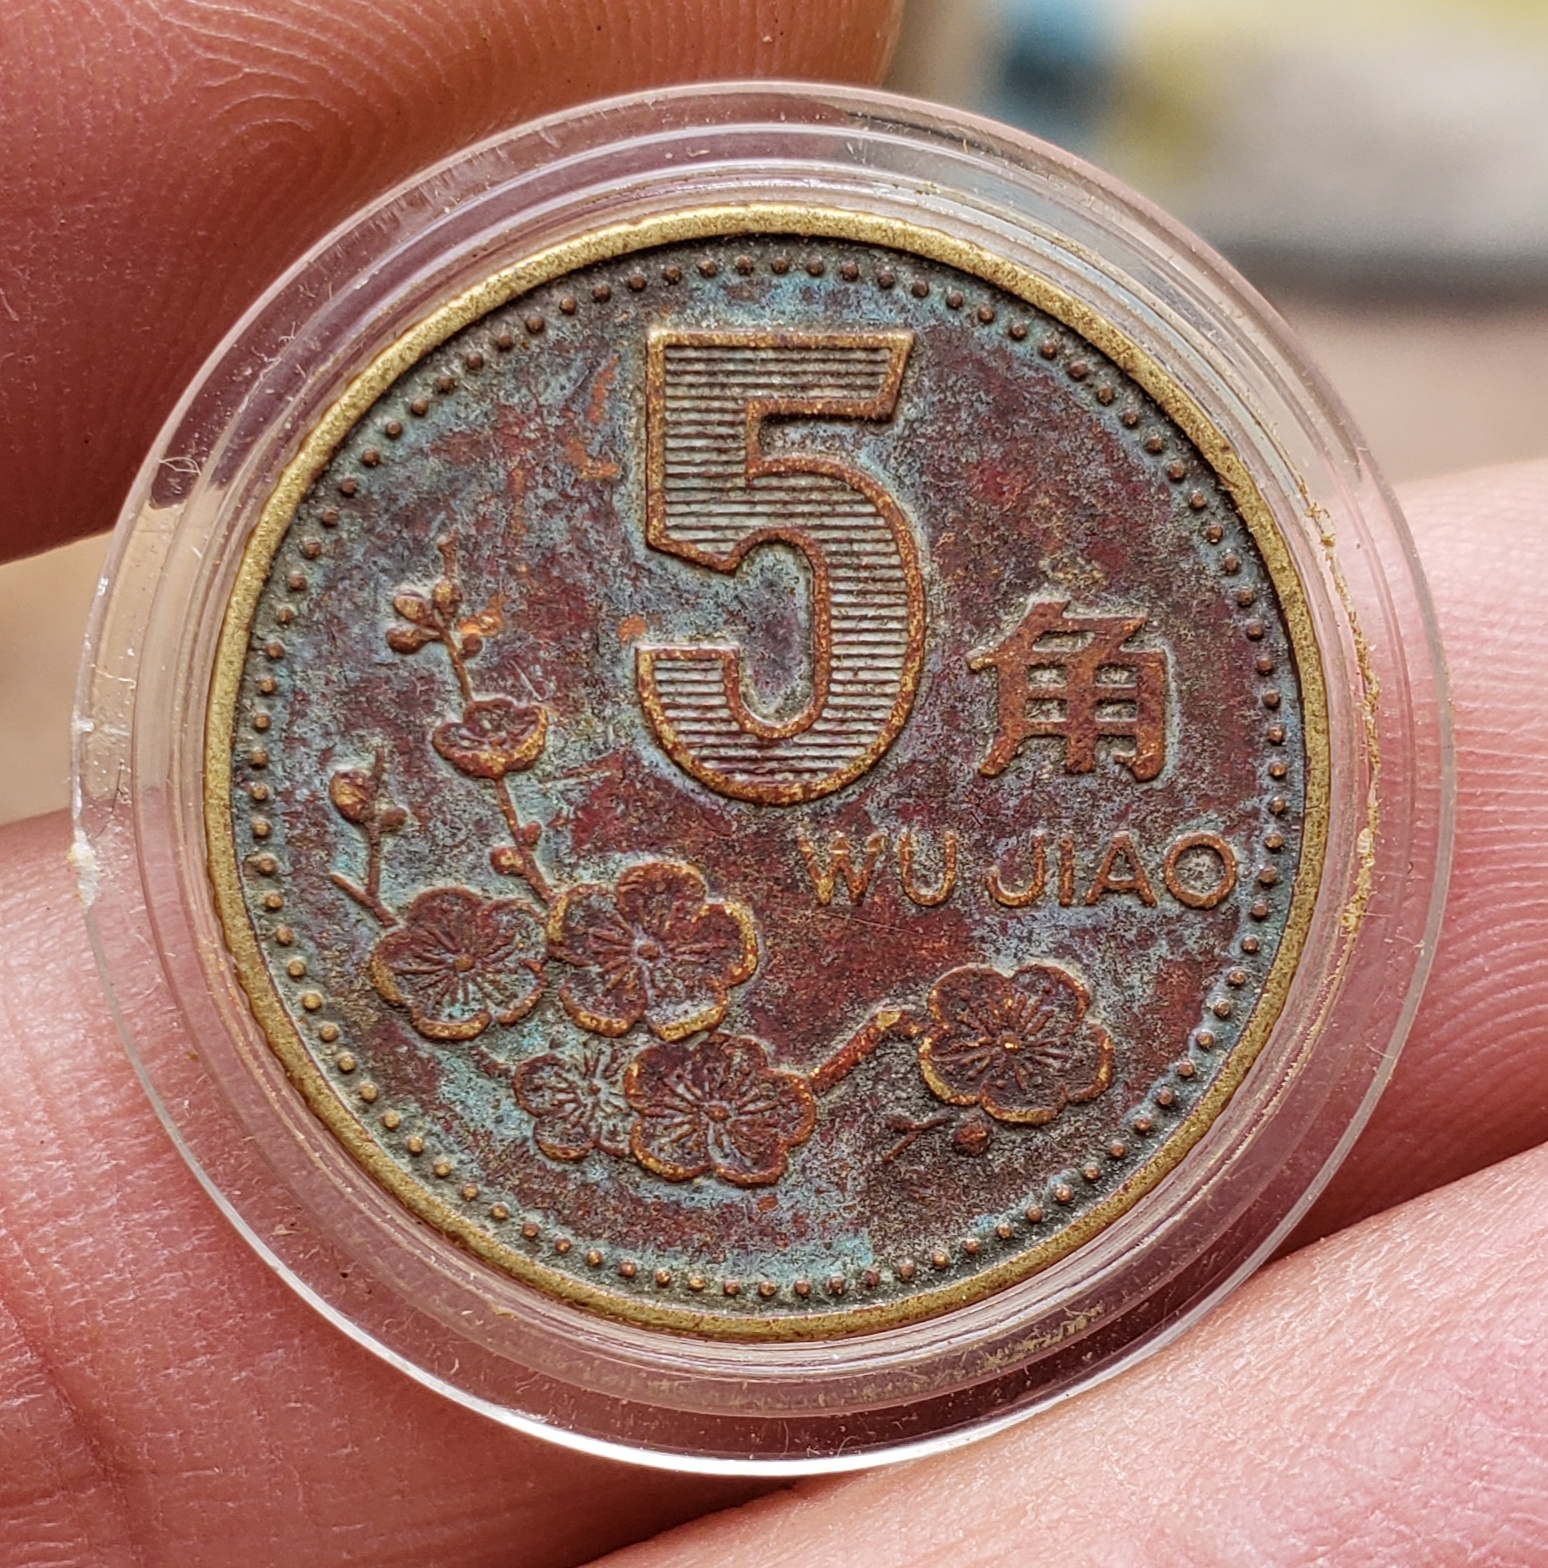 1995年梅花五角包浆币一枚